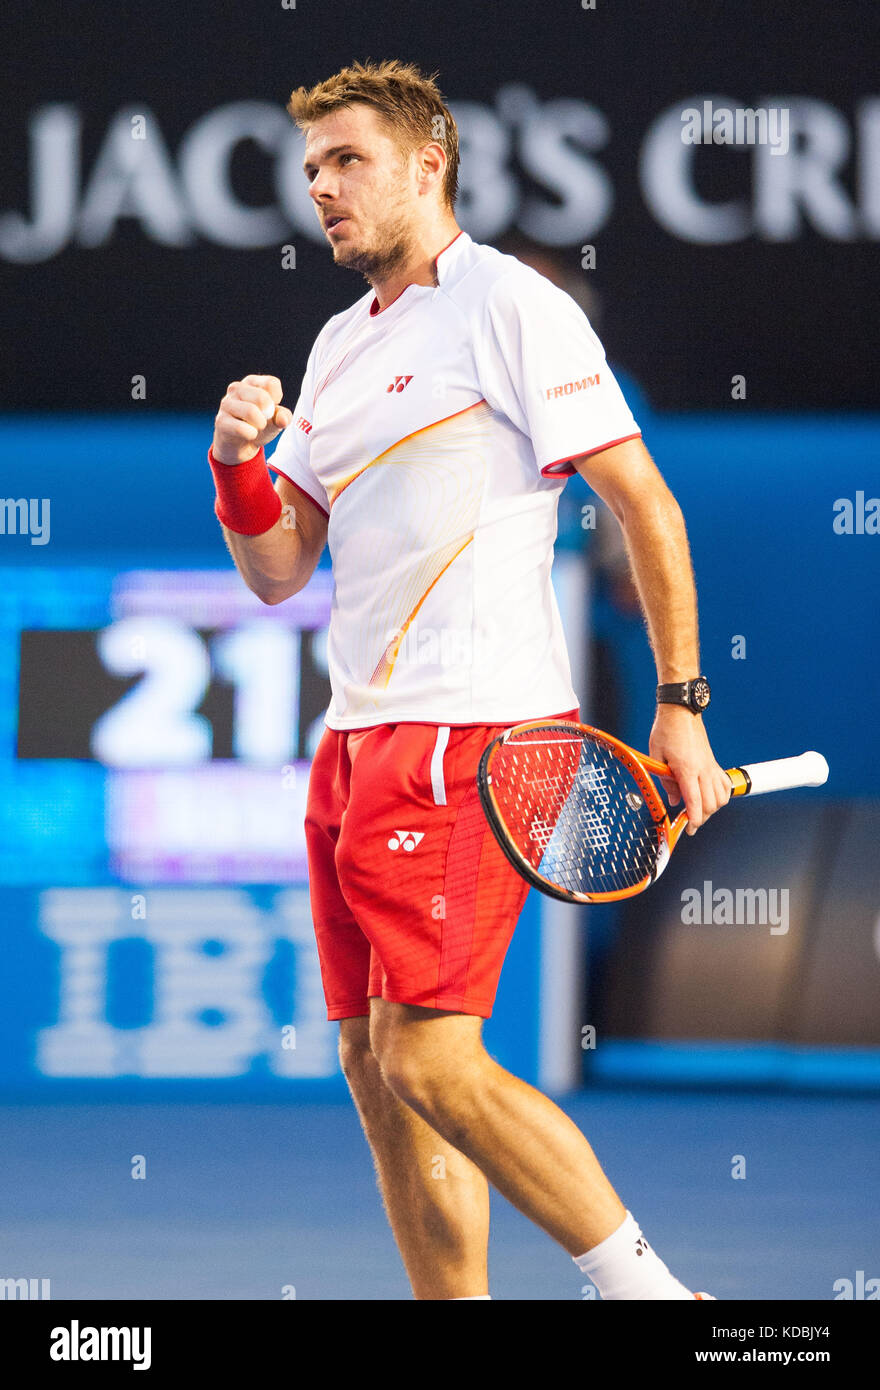 Stanislaus Wawrinka de Suiza derrotó al jugador número uno en el mundo R. Nadal de España para reclamar el 2014 Abierto Australiano de Hombres Singles Champ Foto de stock